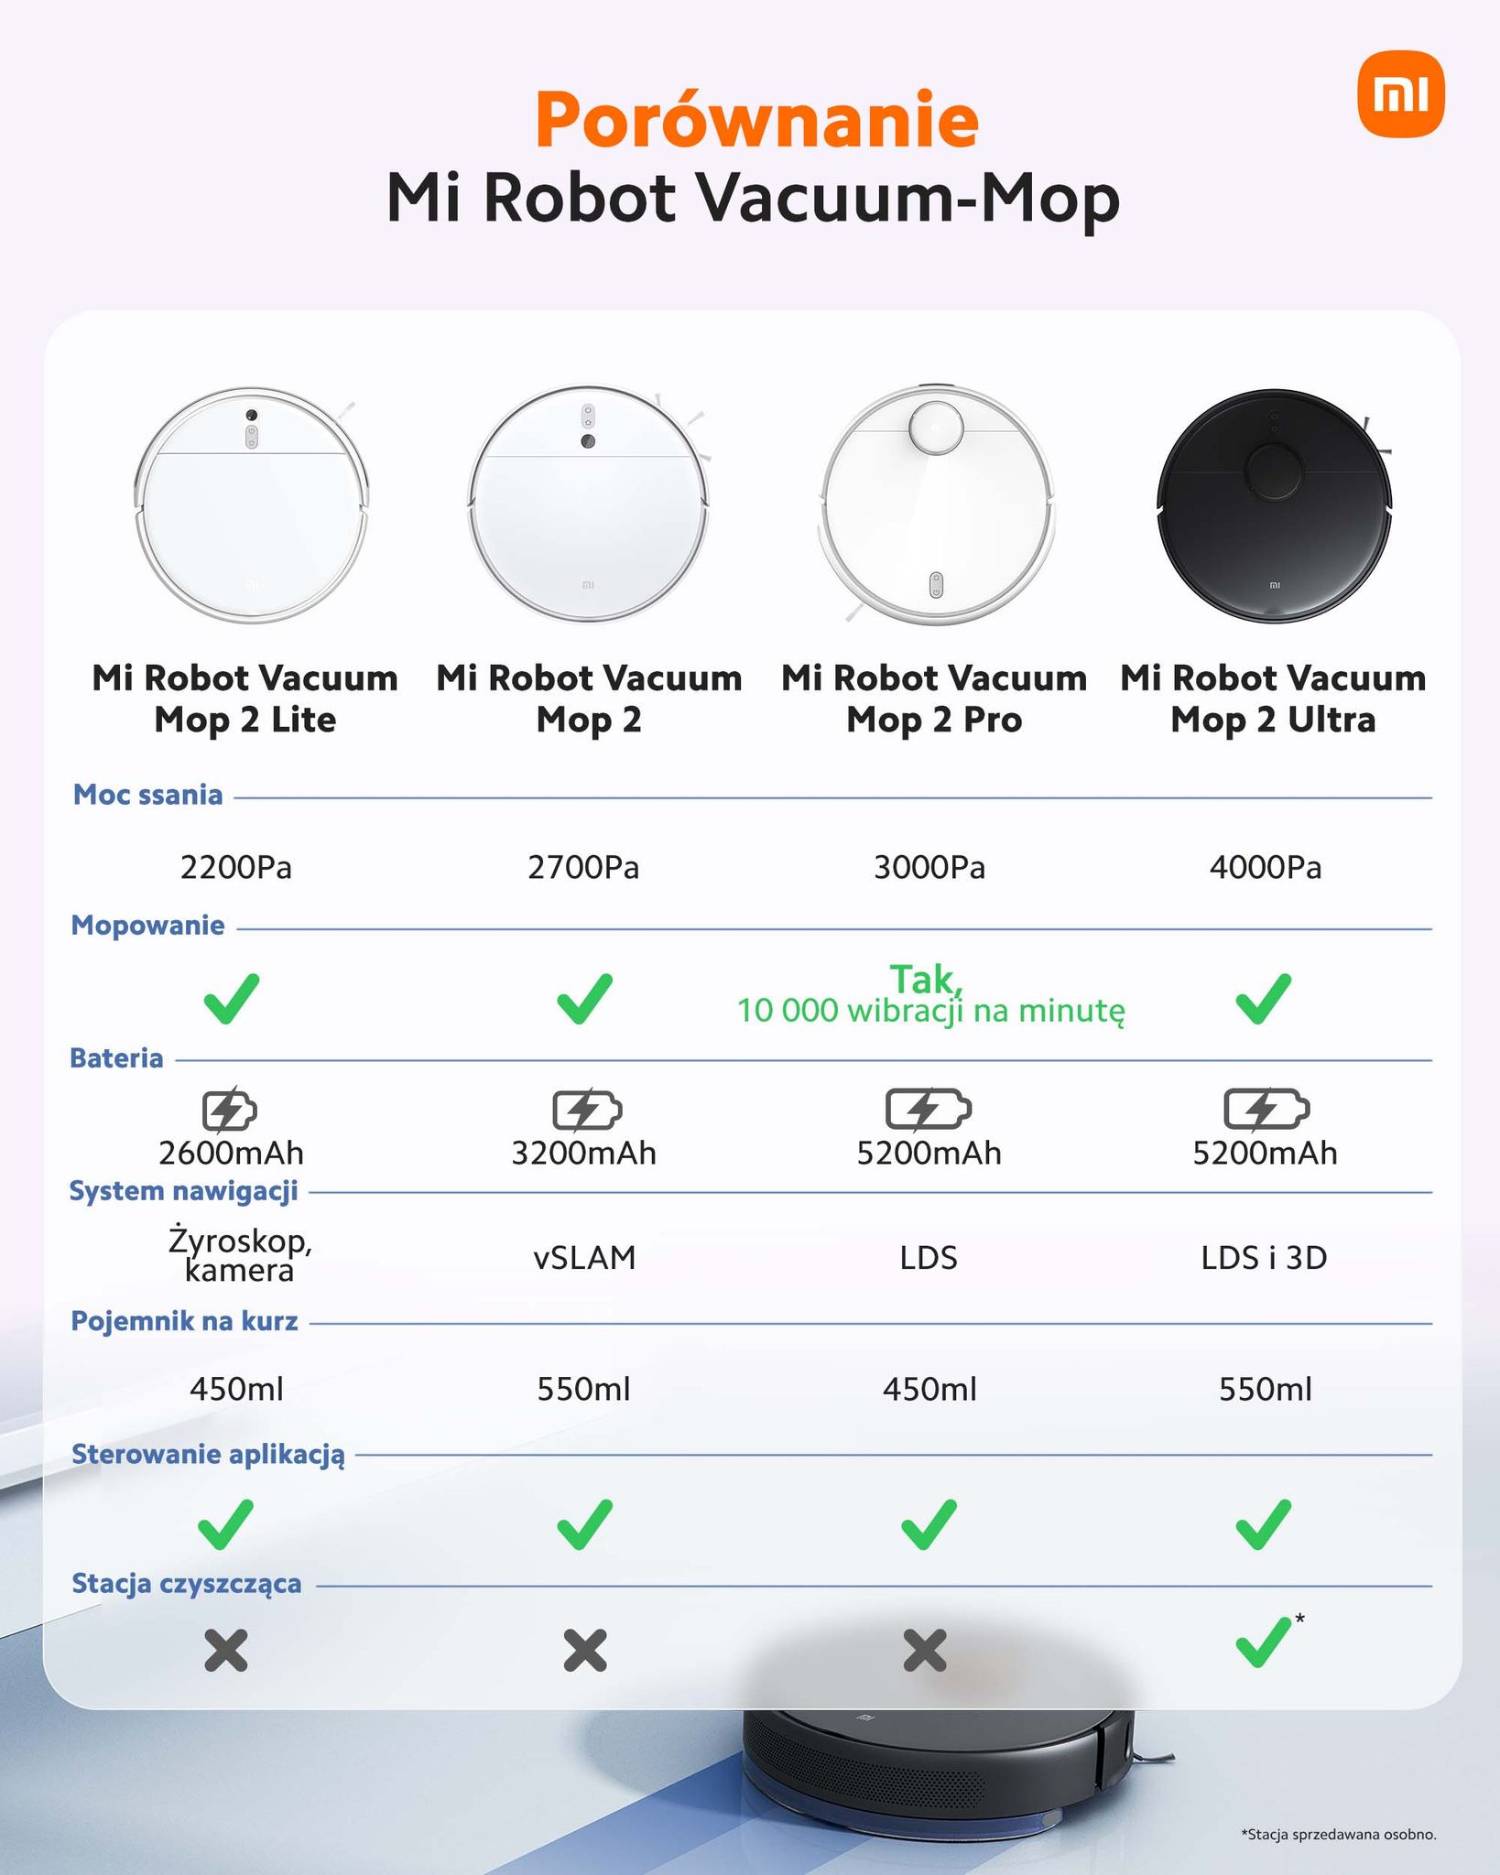 Porównanie Mi Robot Vacuum-Mop